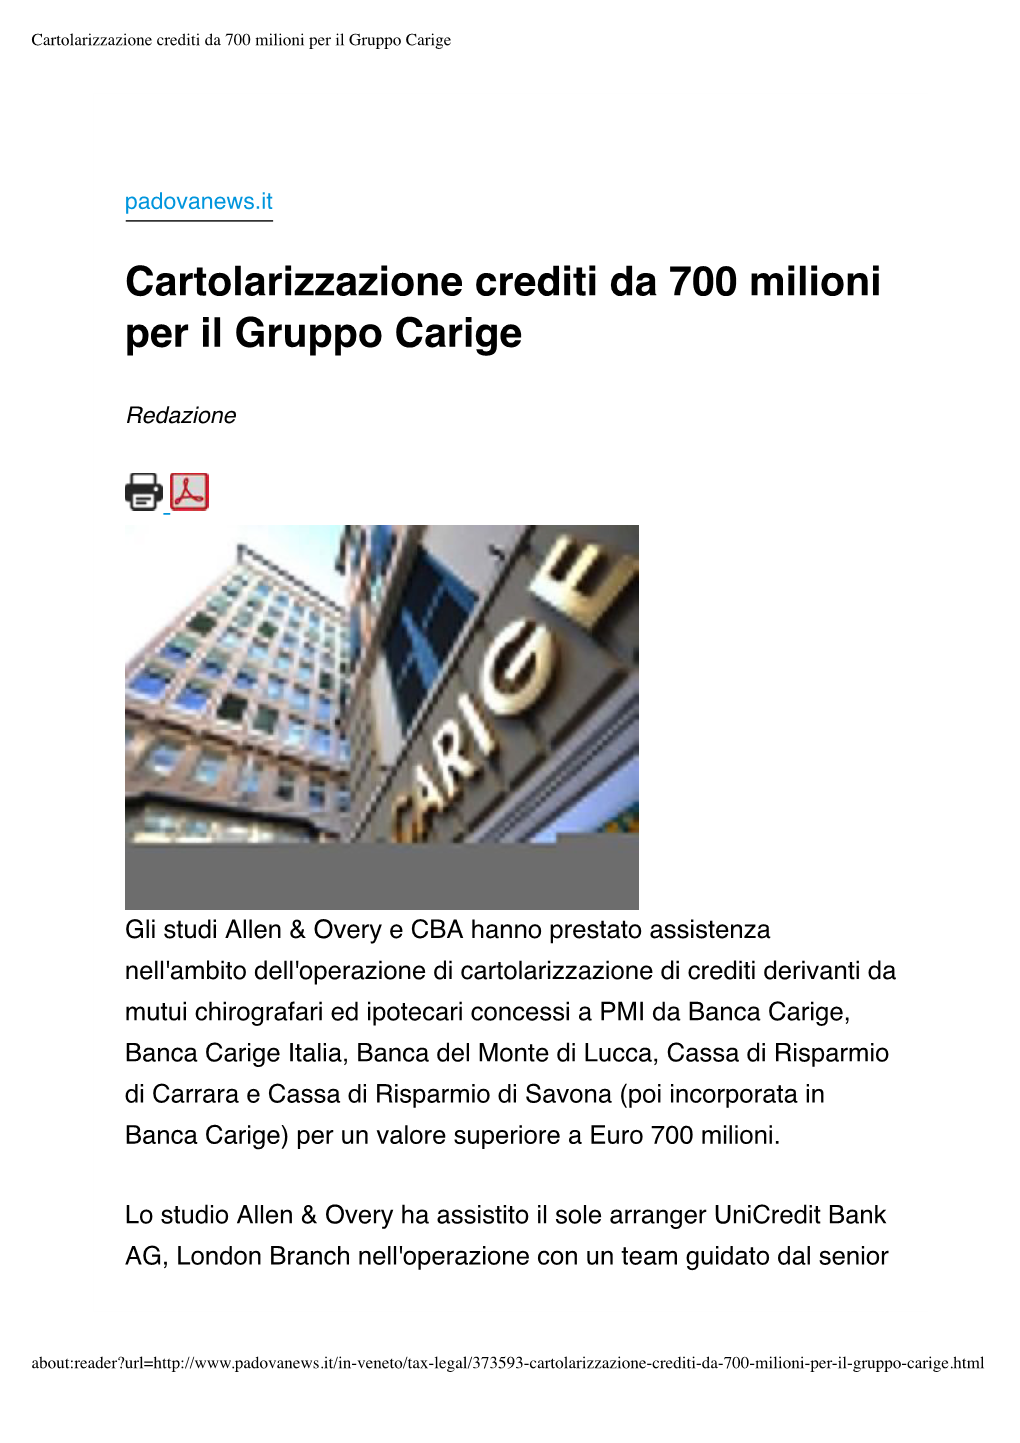 Cartolarizzazione Crediti Da 700 Milioni Per Il Gruppo Carige